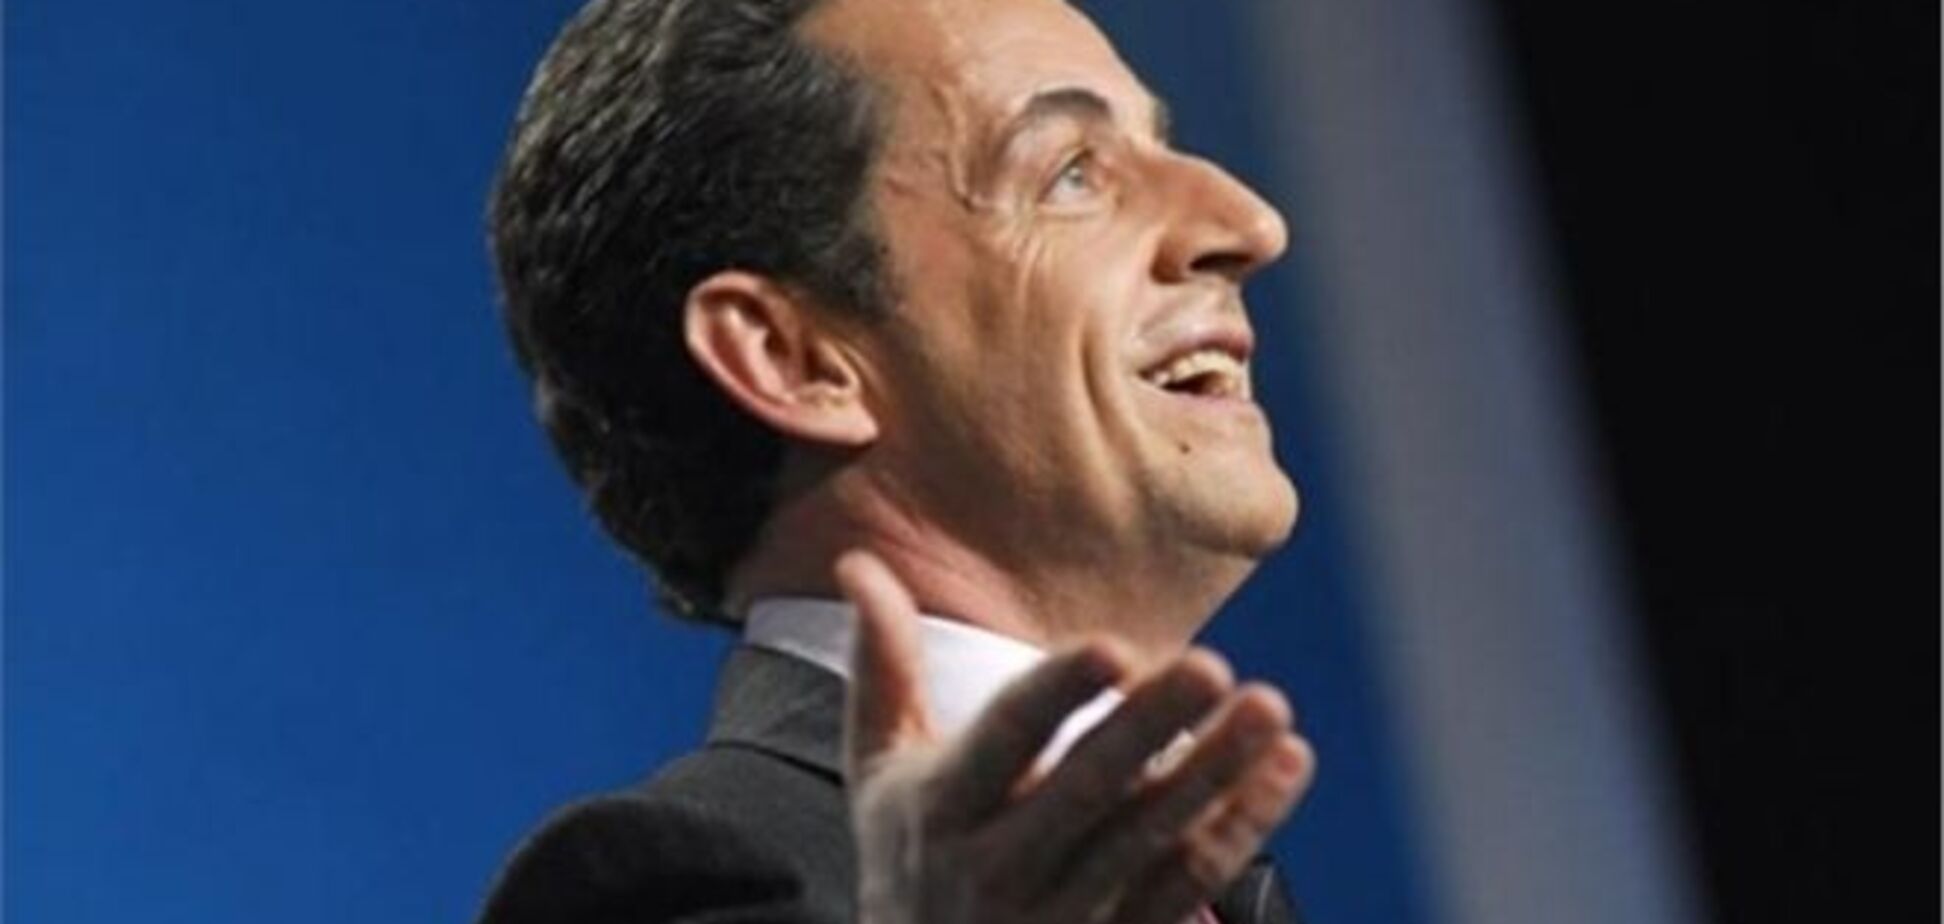 Сторонники Саркози спасли его от банкротства